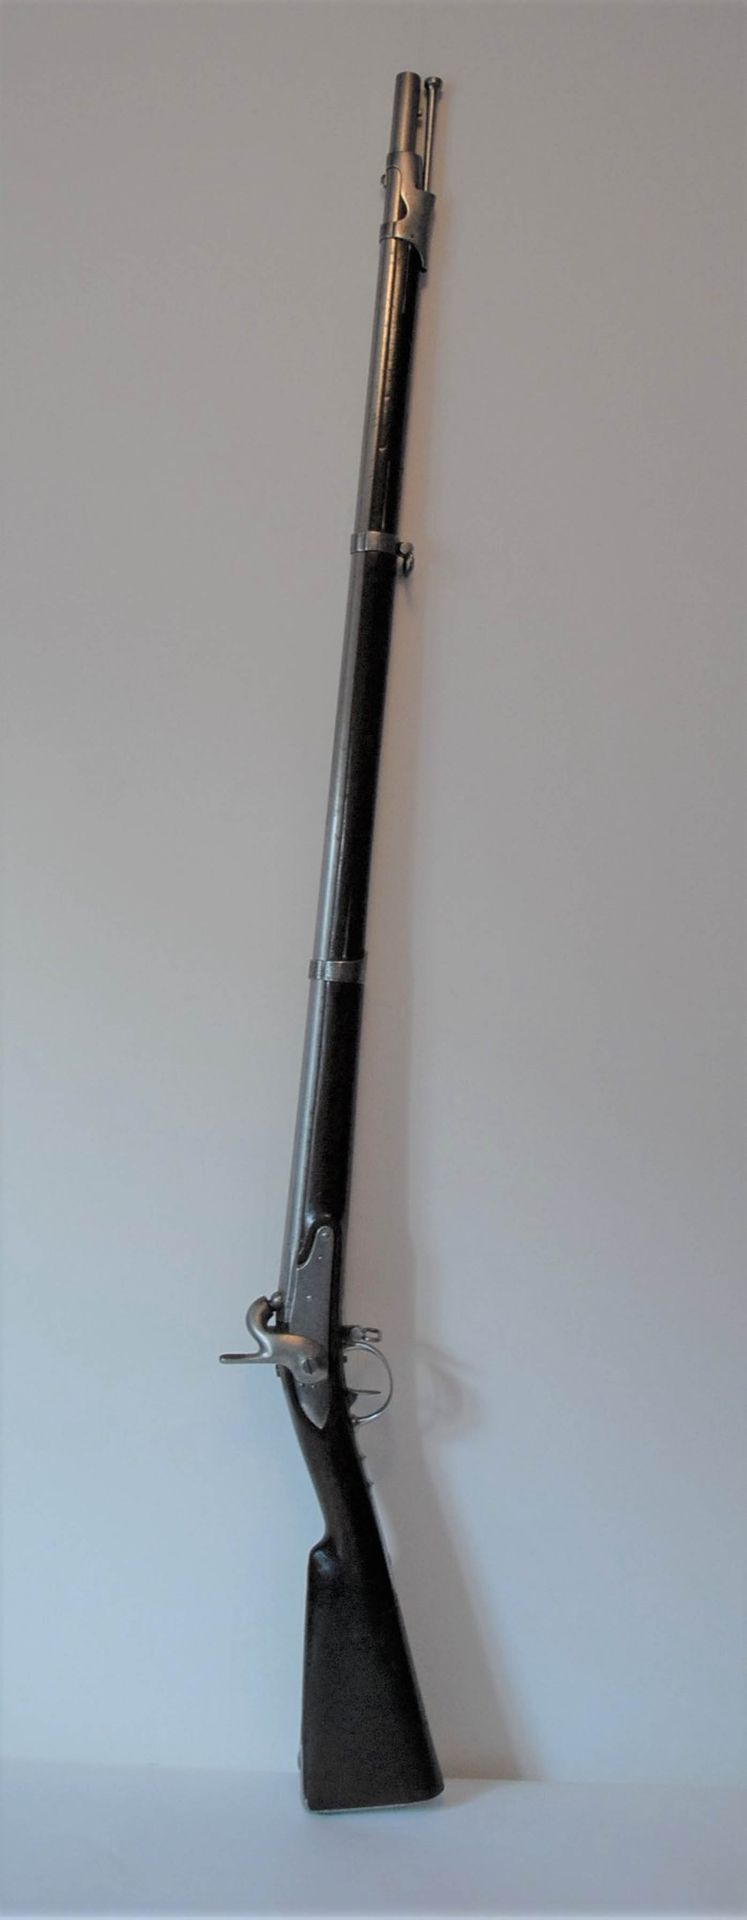 Null 步兵打击式步枪1822型T之二。锁上有签名："Mutzig皇家制造"；枪管的日期是1832年，铁制配件；胡桃木枪托上有 "Rouen "和 "Mutz&hellip;